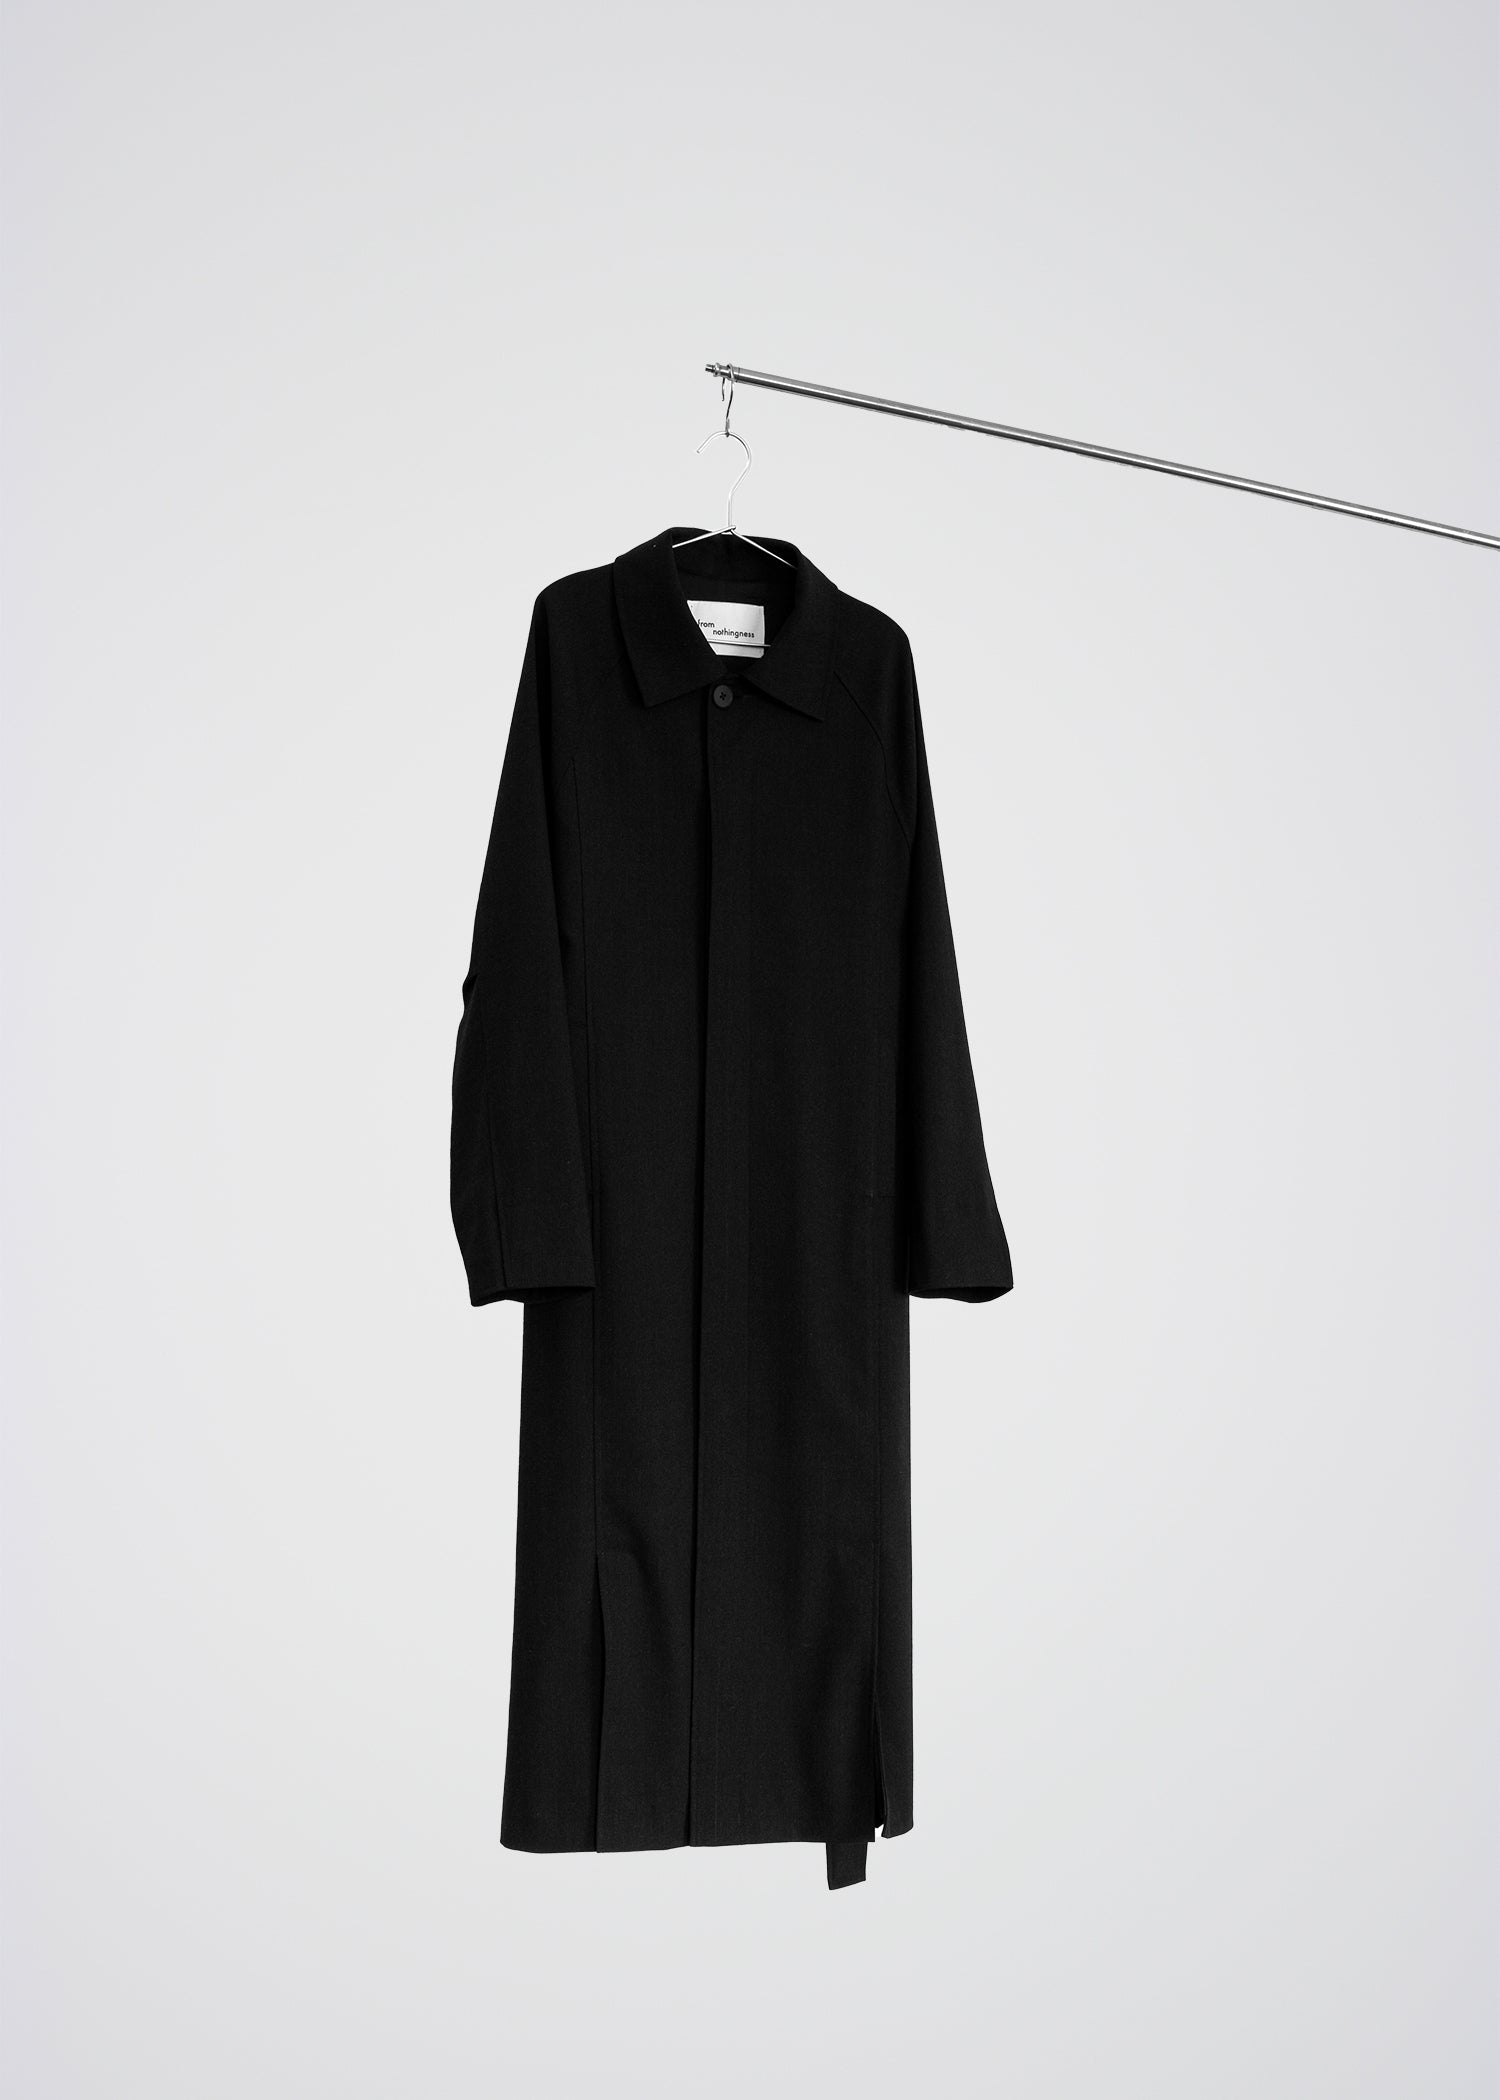 Black paneled coat